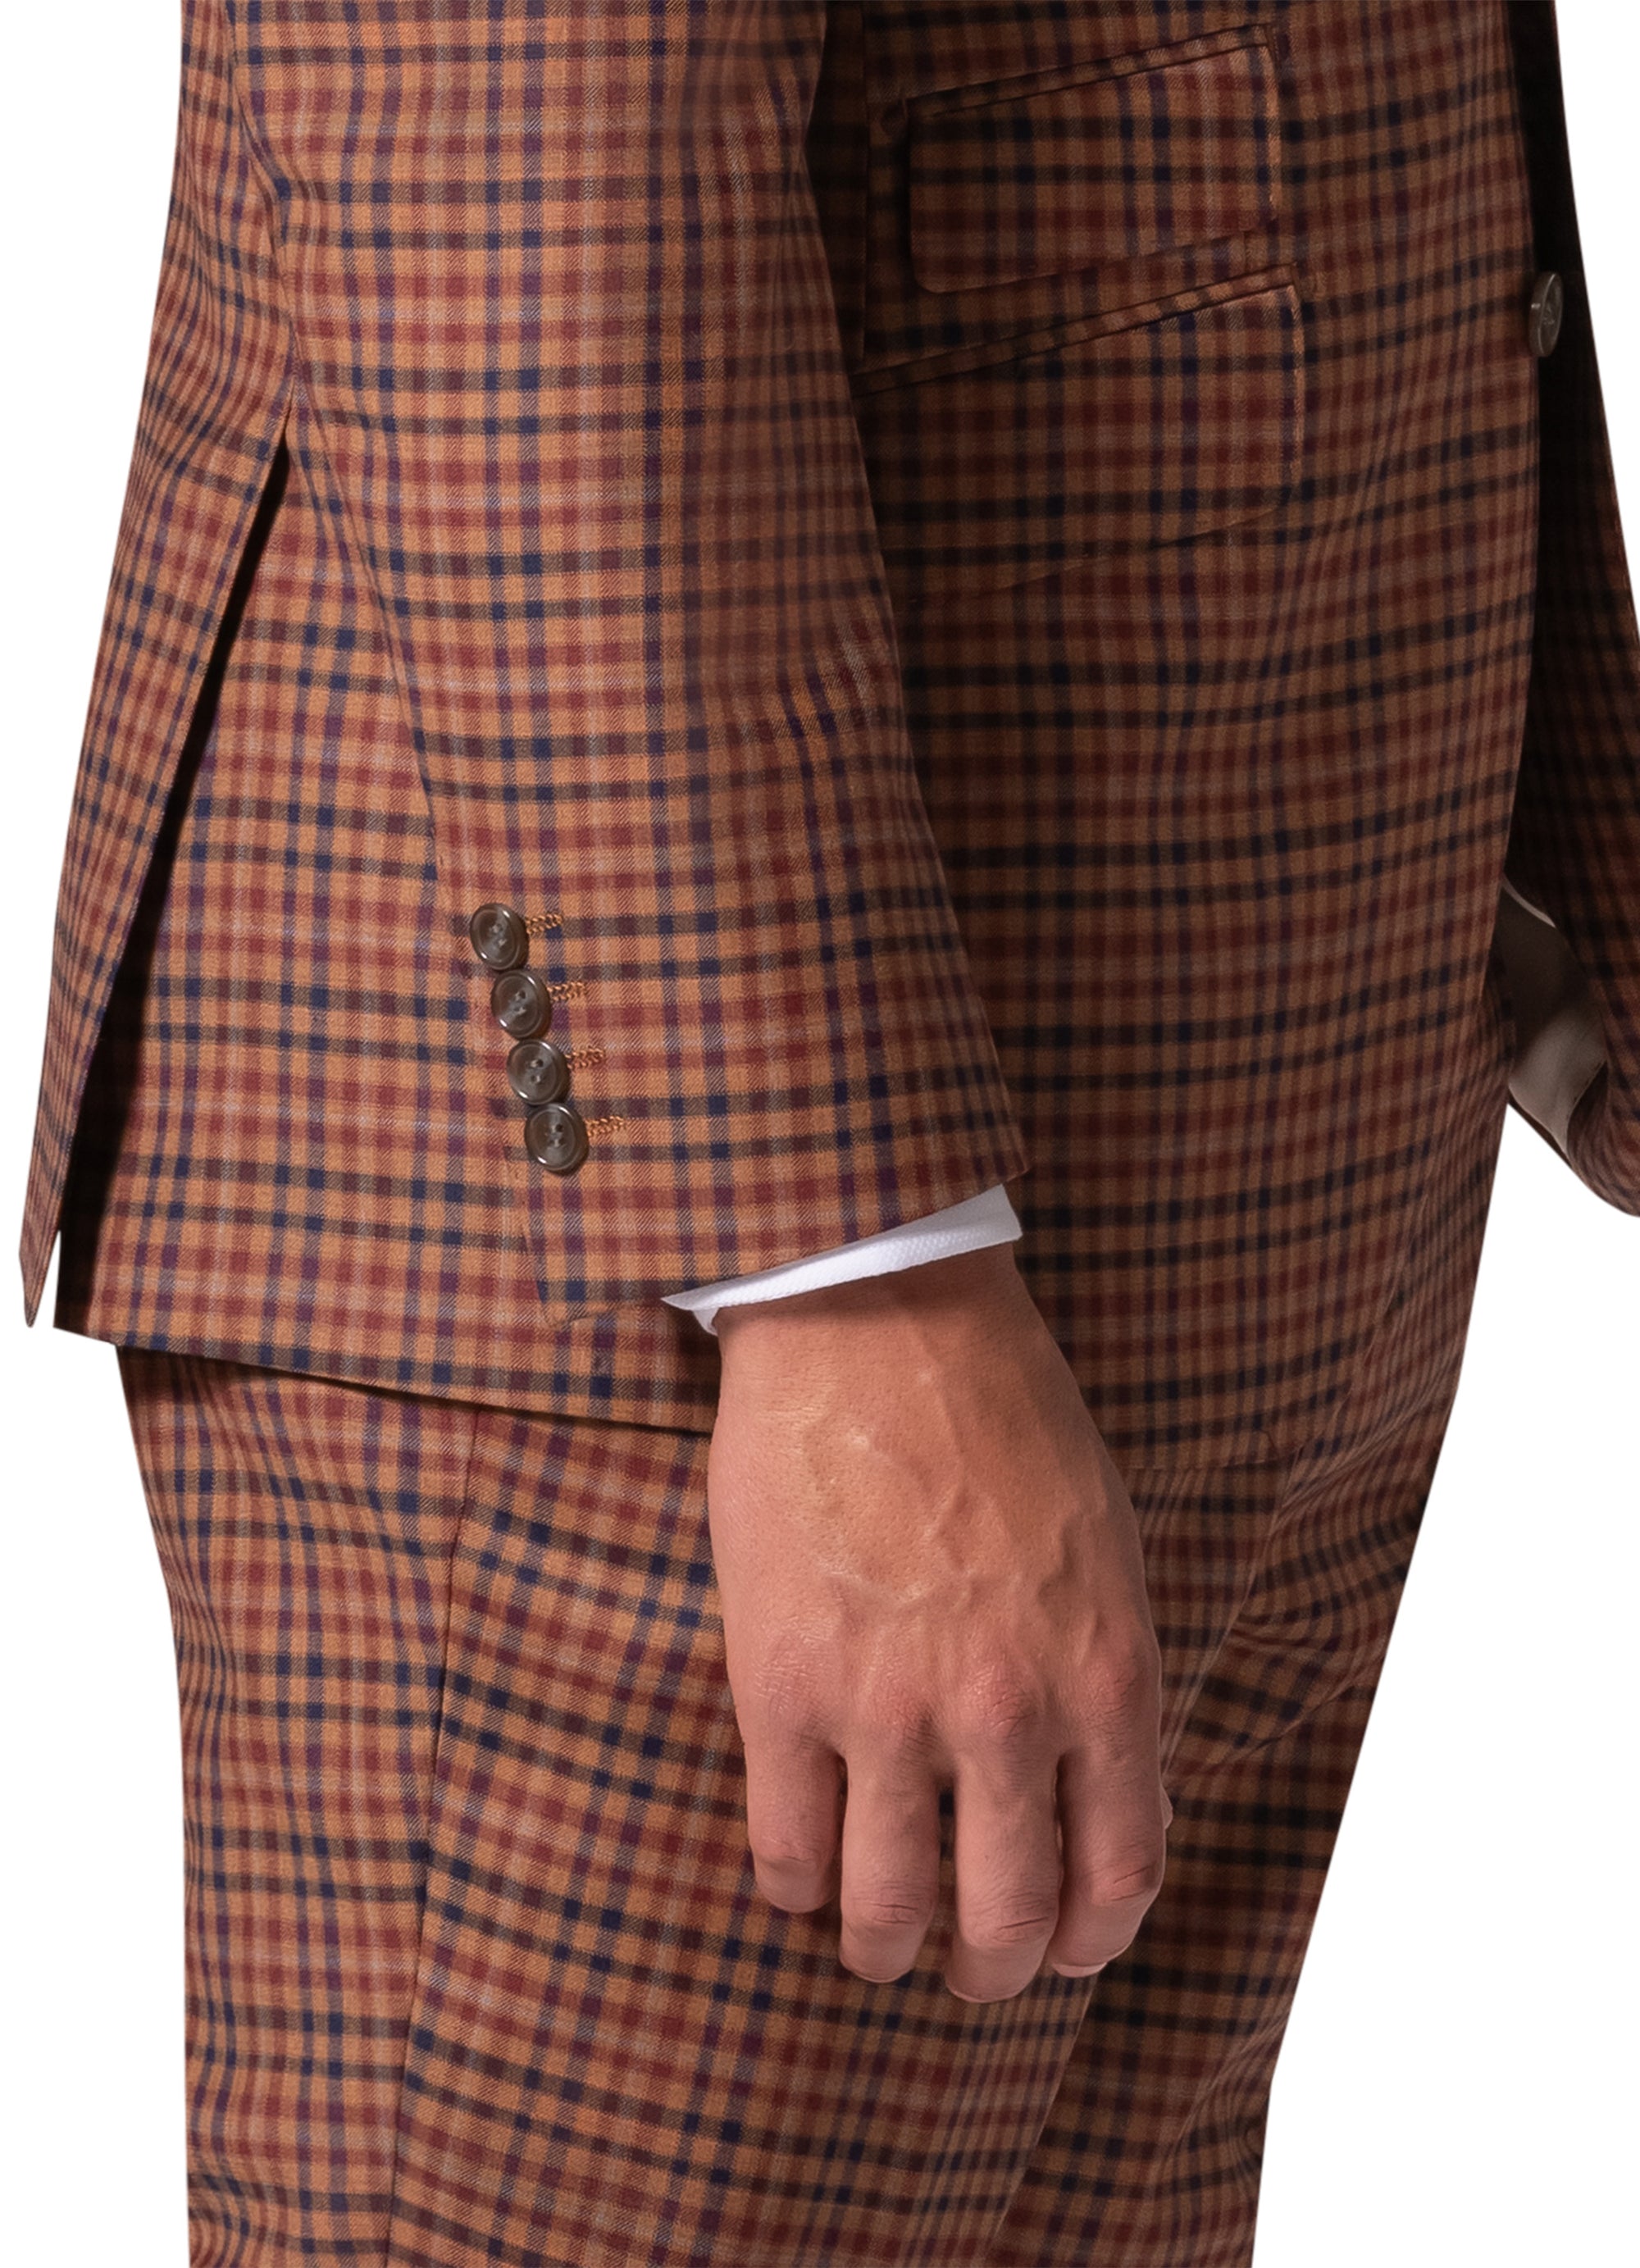 Berragamo Essex Elegant - Faille Wool Solid Suit 10005.4097